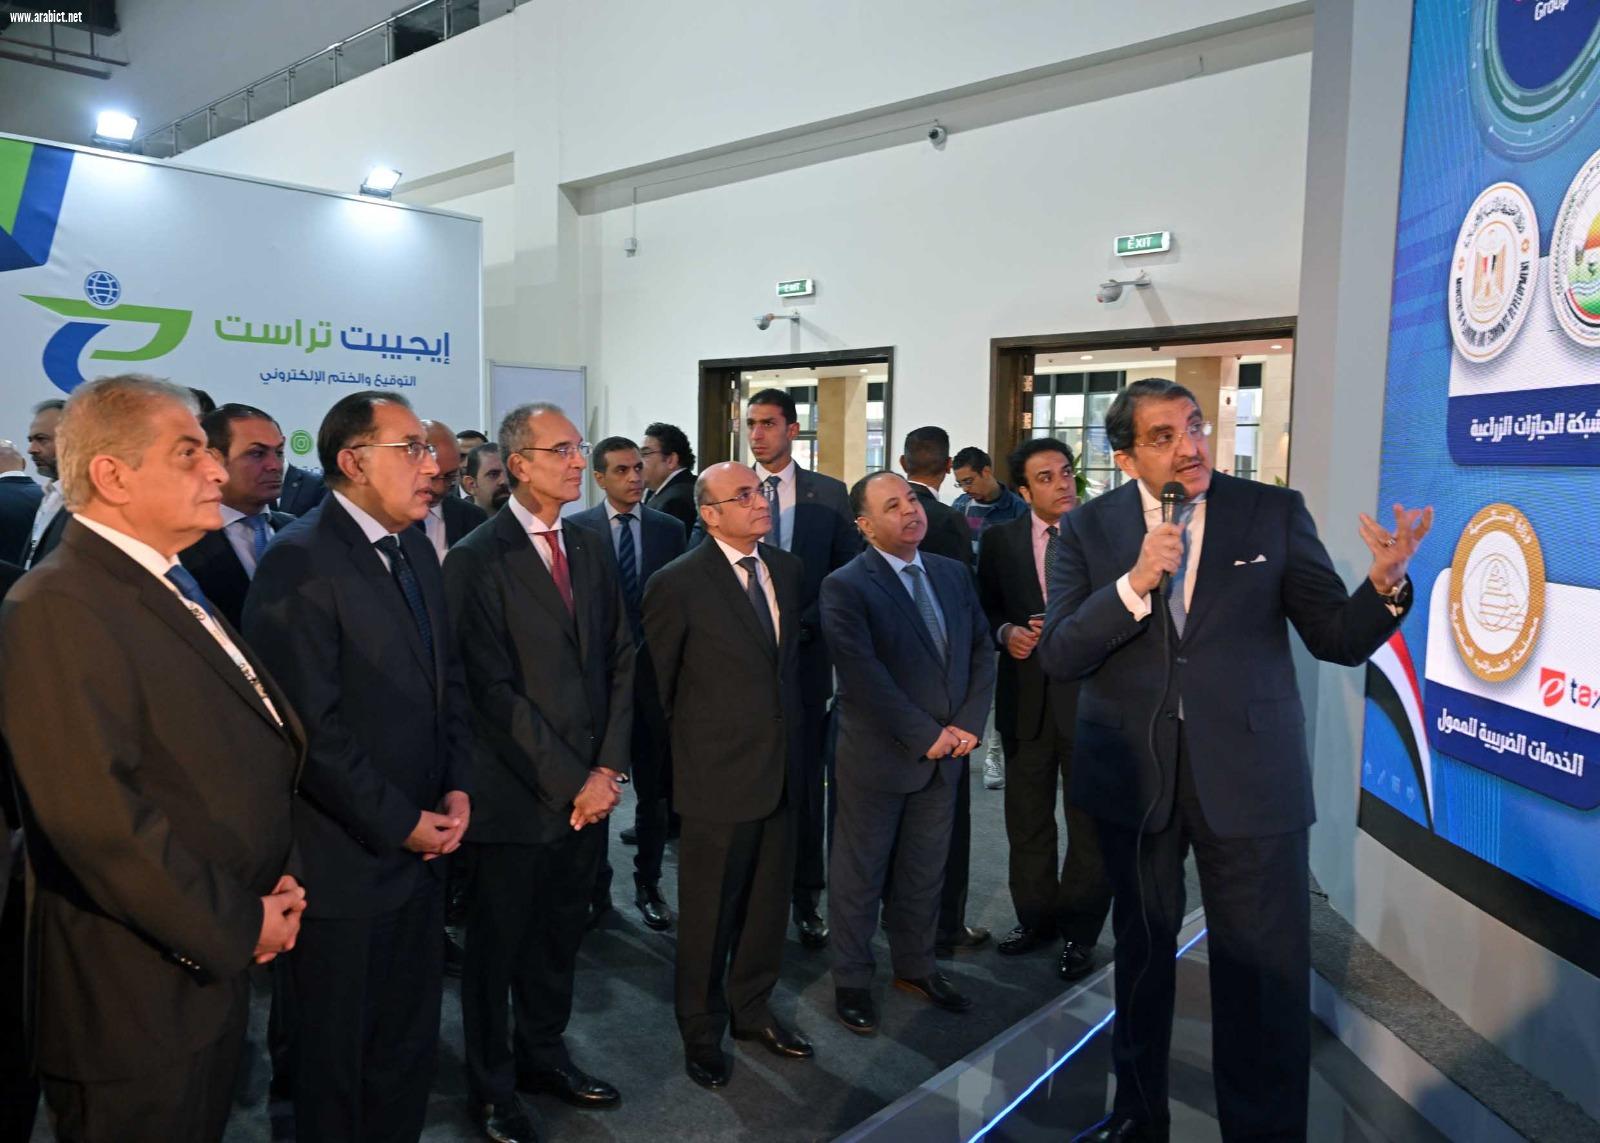  بمشاركة أكثر من 400 شركة.. رئيس الوزراء يفتتح المعرض والمؤتمر الدولي للتكنولوجيا للشرق الأوسط وأفريقيا Cairo ICT 23